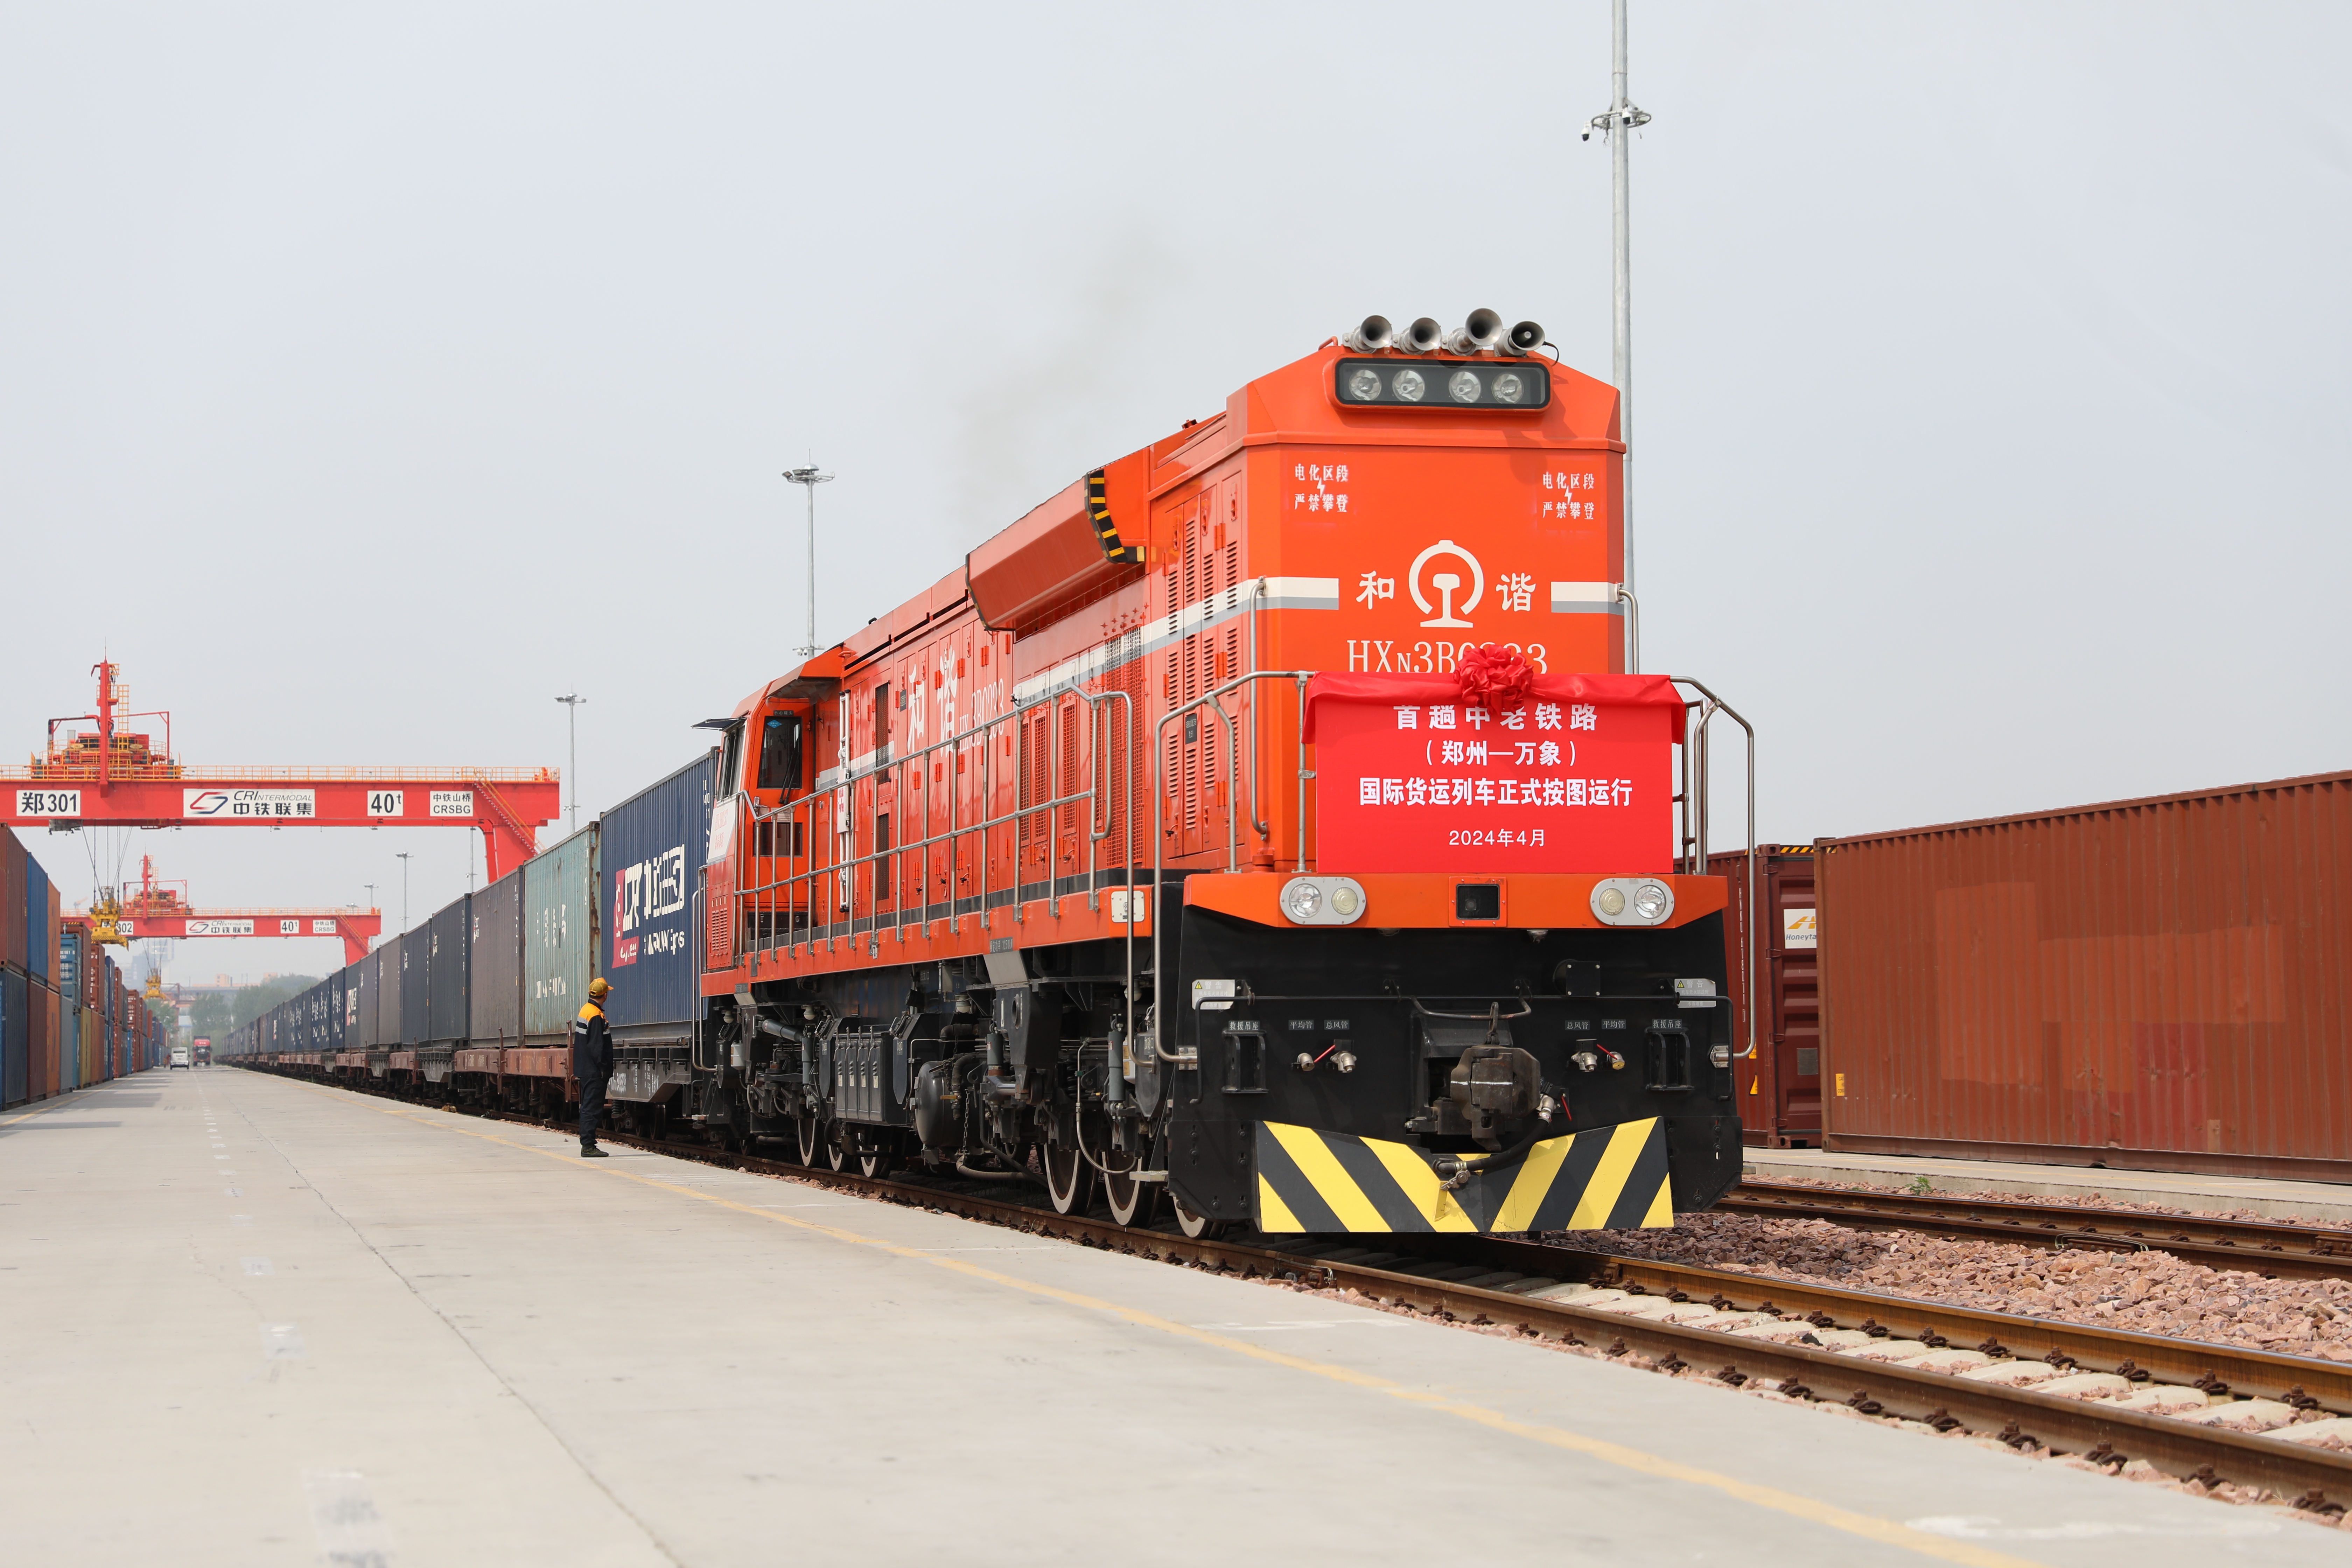 China-Laos (Zhengzhou-Vientiane) freight train to run according to train diagram since April 11